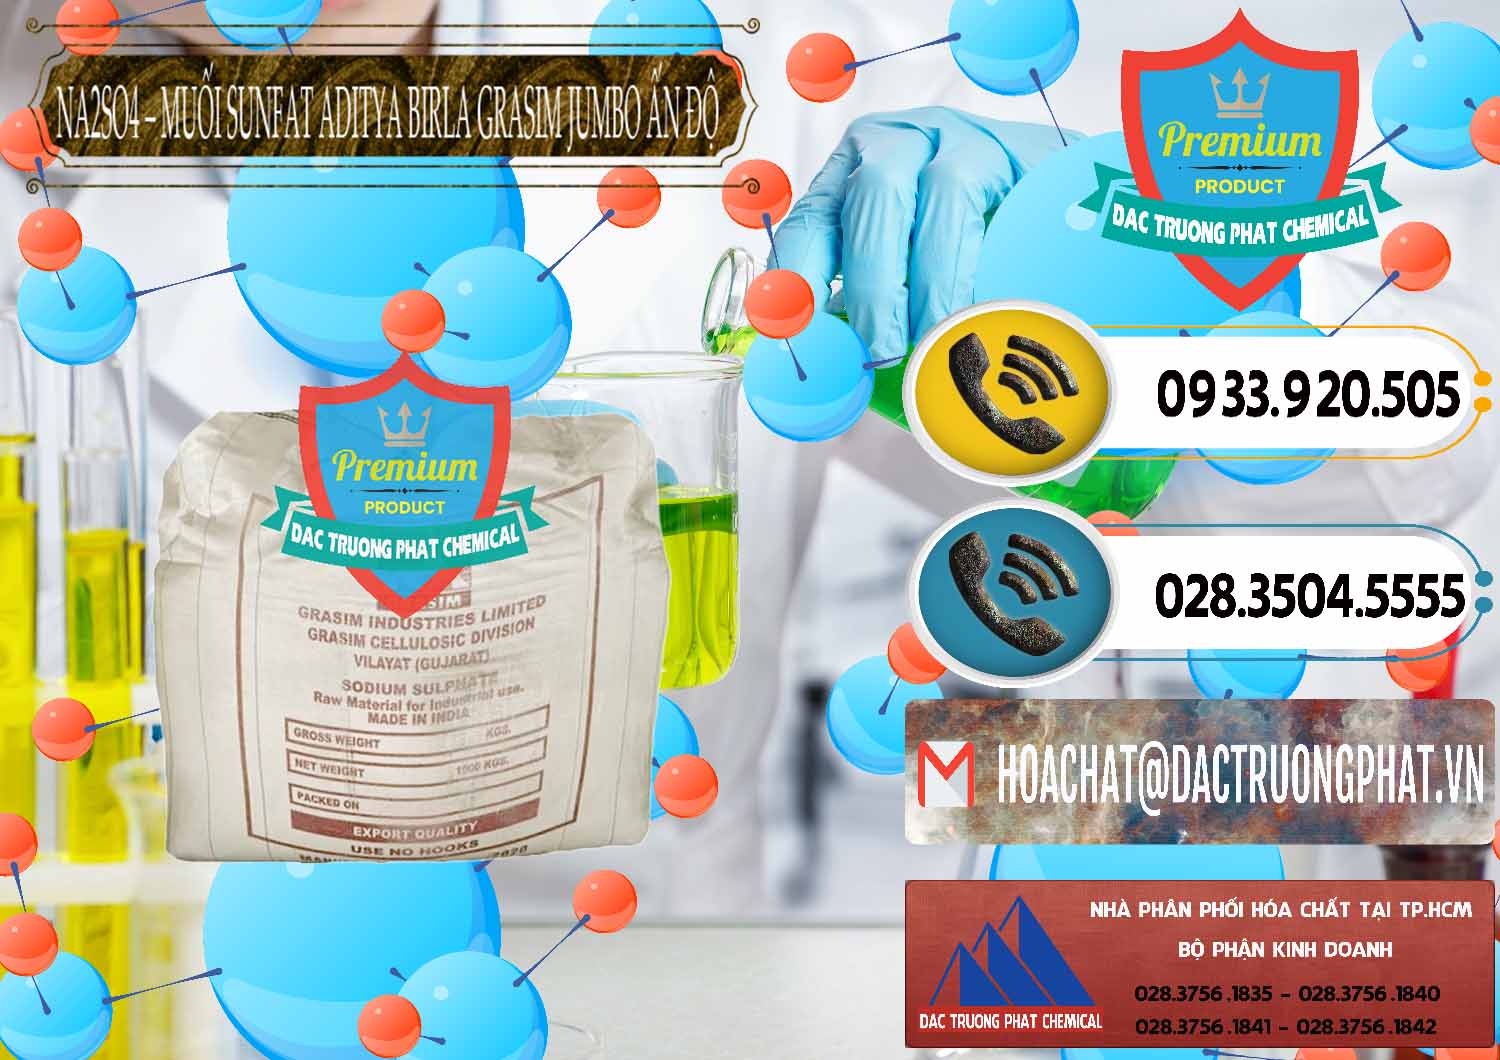 Chuyên cung ứng và bán Sodium Sulphate - Muối Sunfat Na2SO4 Jumbo Bành Aditya Birla Grasim Ấn Độ India - 0357 - Công ty kinh doanh _ cung cấp hóa chất tại TP.HCM - hoachatdetnhuom.vn